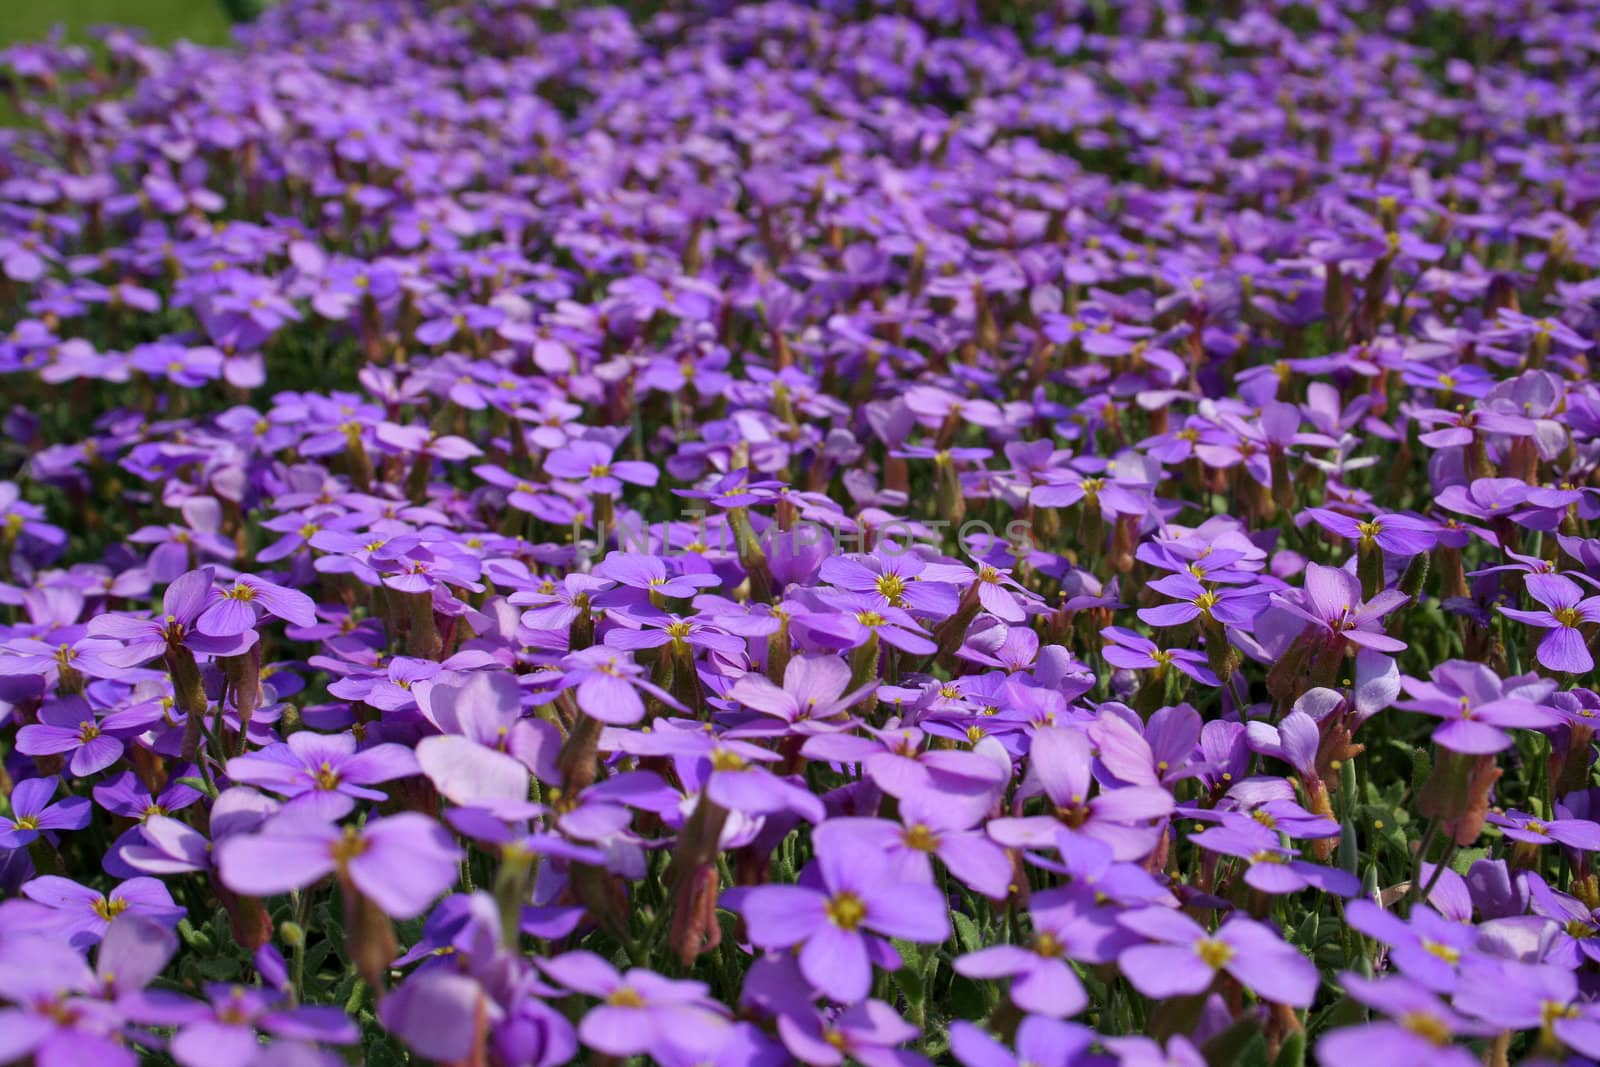 purple flowers in the garden by furzyk73